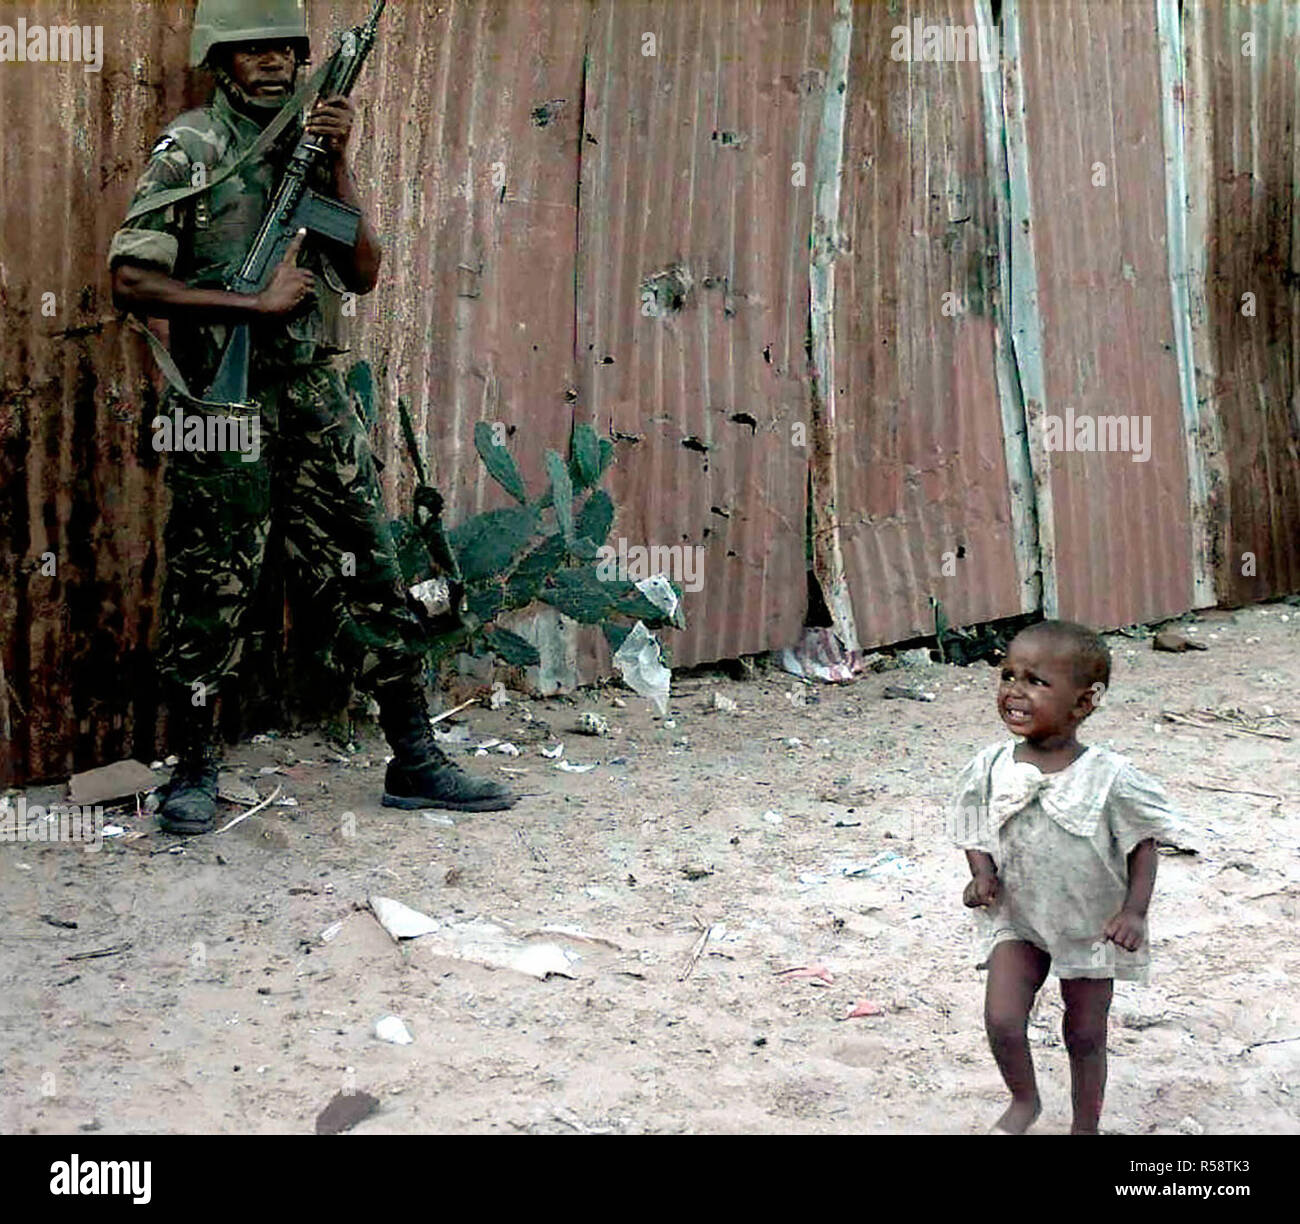 1993 - ein schreiendes Kleinkind in Somalia Spaziergänge hinter einem Botswana Defence Force Soldat während eines armen Raid auf der Bakara Markt. Der Soldat Punkte eine 7,62 mm FN-FAL, belgischen, Gewehr, in die Luft. Diese Mission ist in der direkten Unterstützung der Operation Restore Hope. Stockfoto